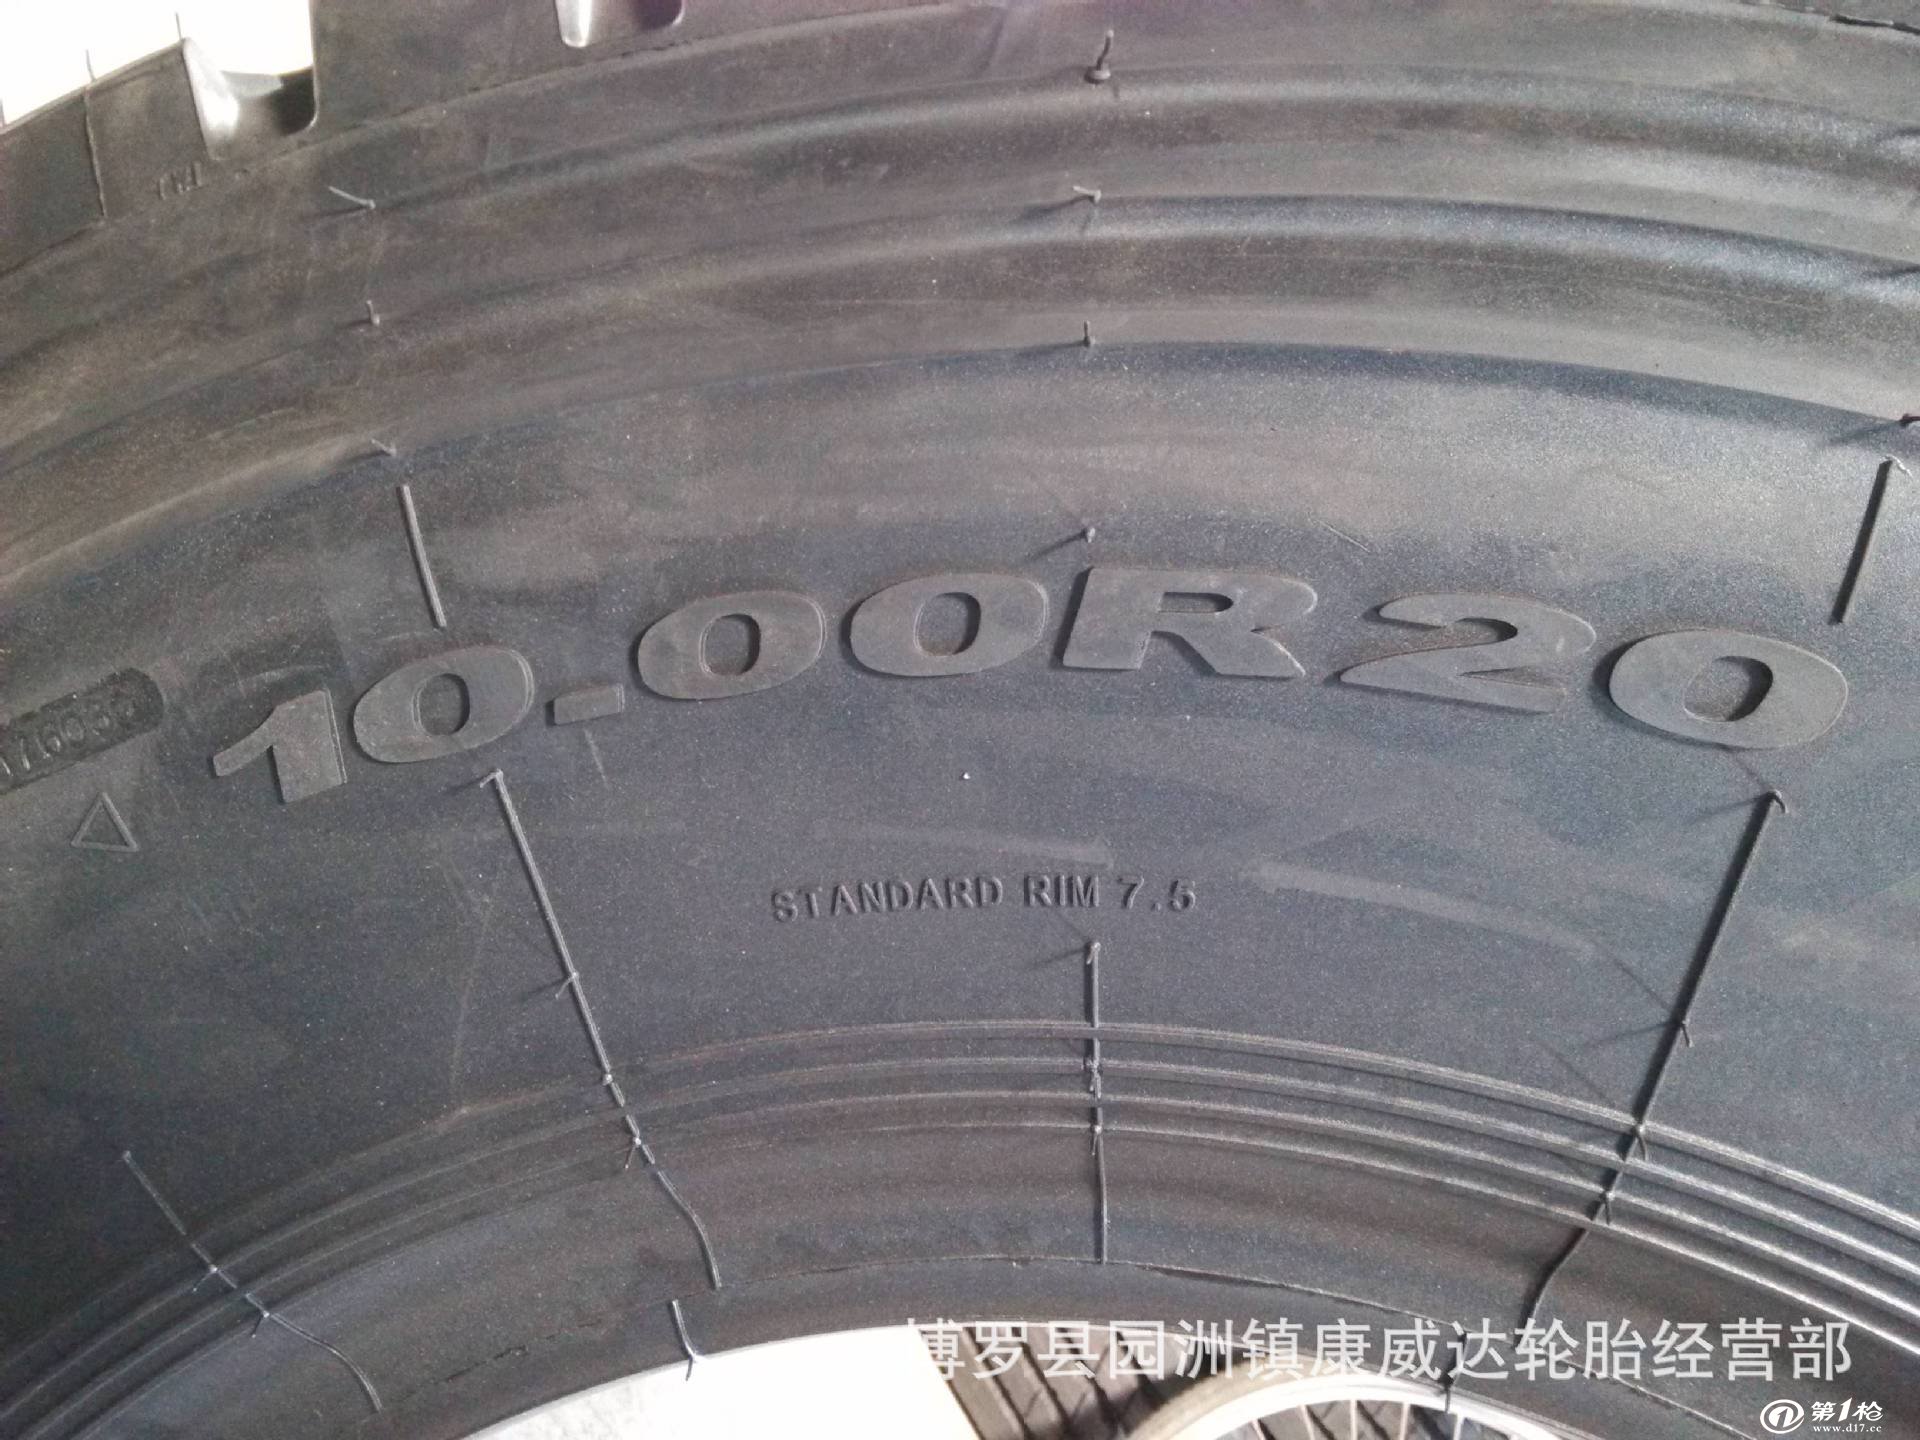 全新正品上海金吉全钢丝载重轮胎1000r20 18层 jj79 超耐磨,抗载